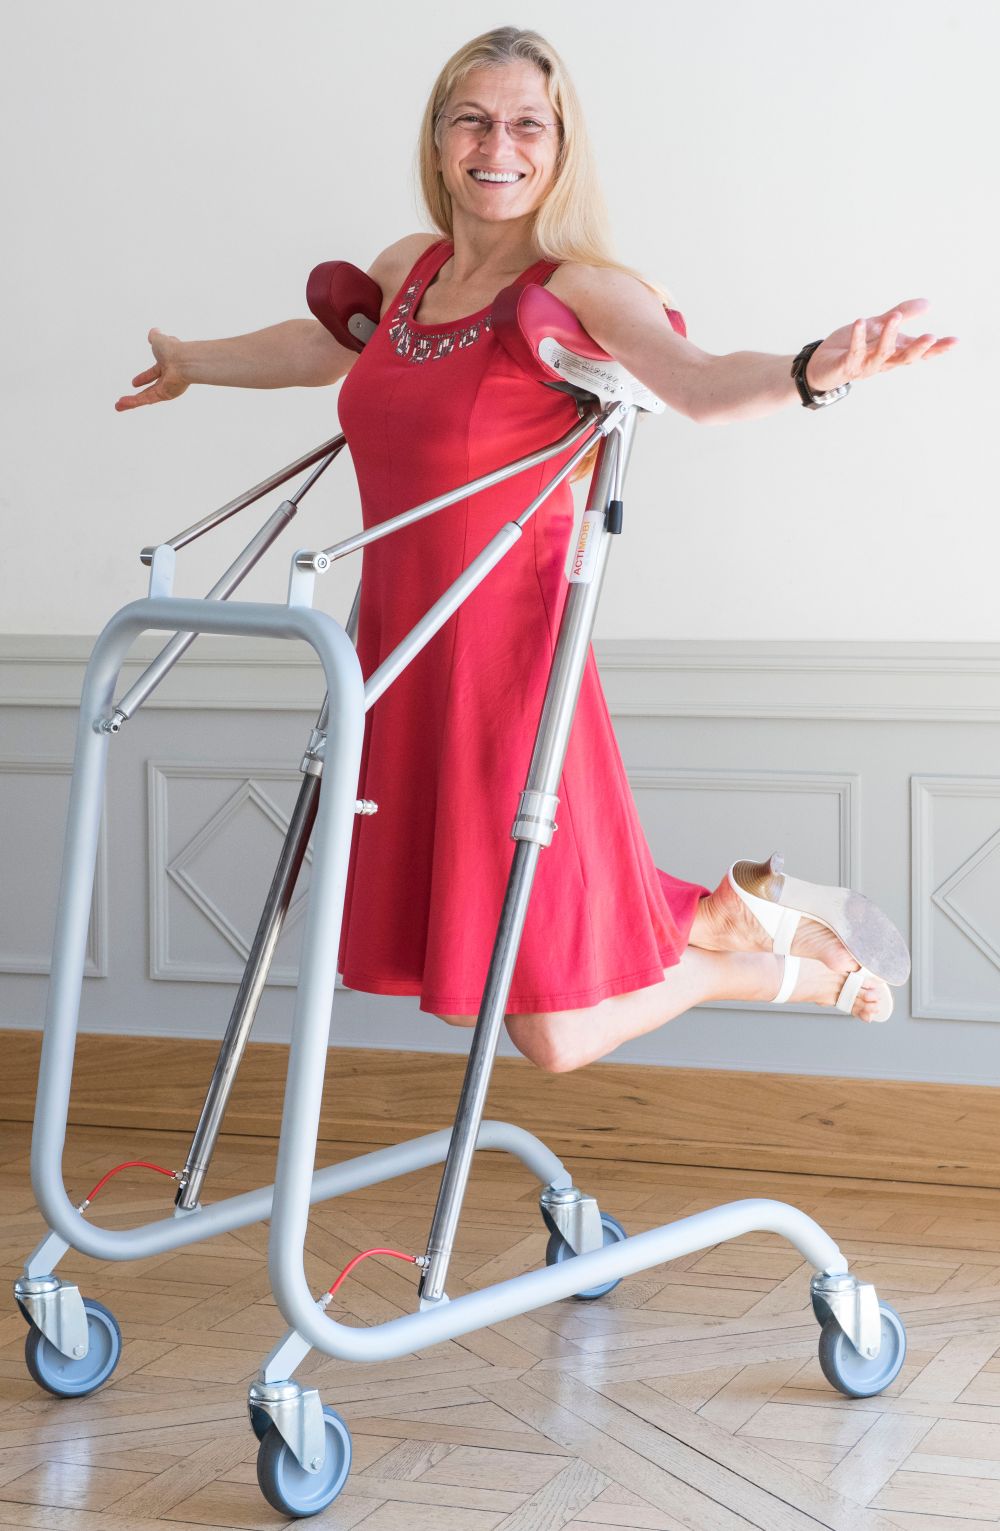 Viviane Zeller, créatrice de l'appareil Actimobi, destiné aux personnes en perte de mobilité. Un innovation créée et produite en Alsace © DP